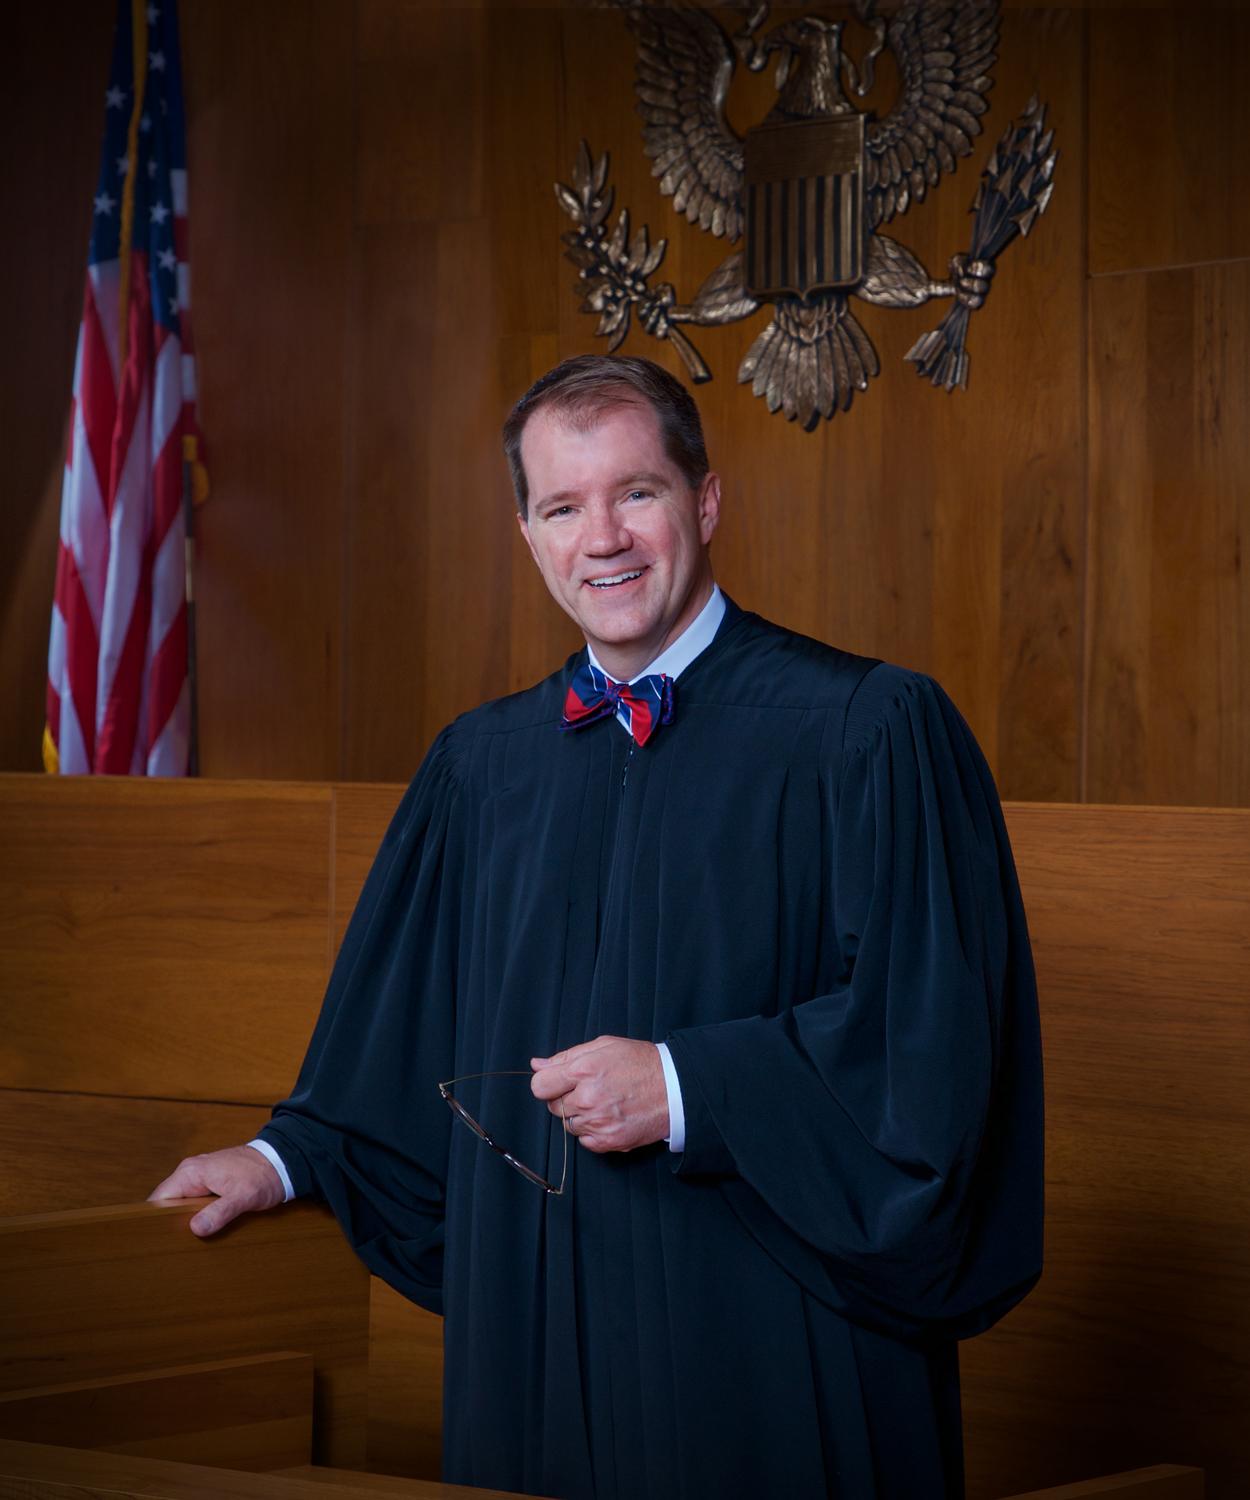 Judge Willett